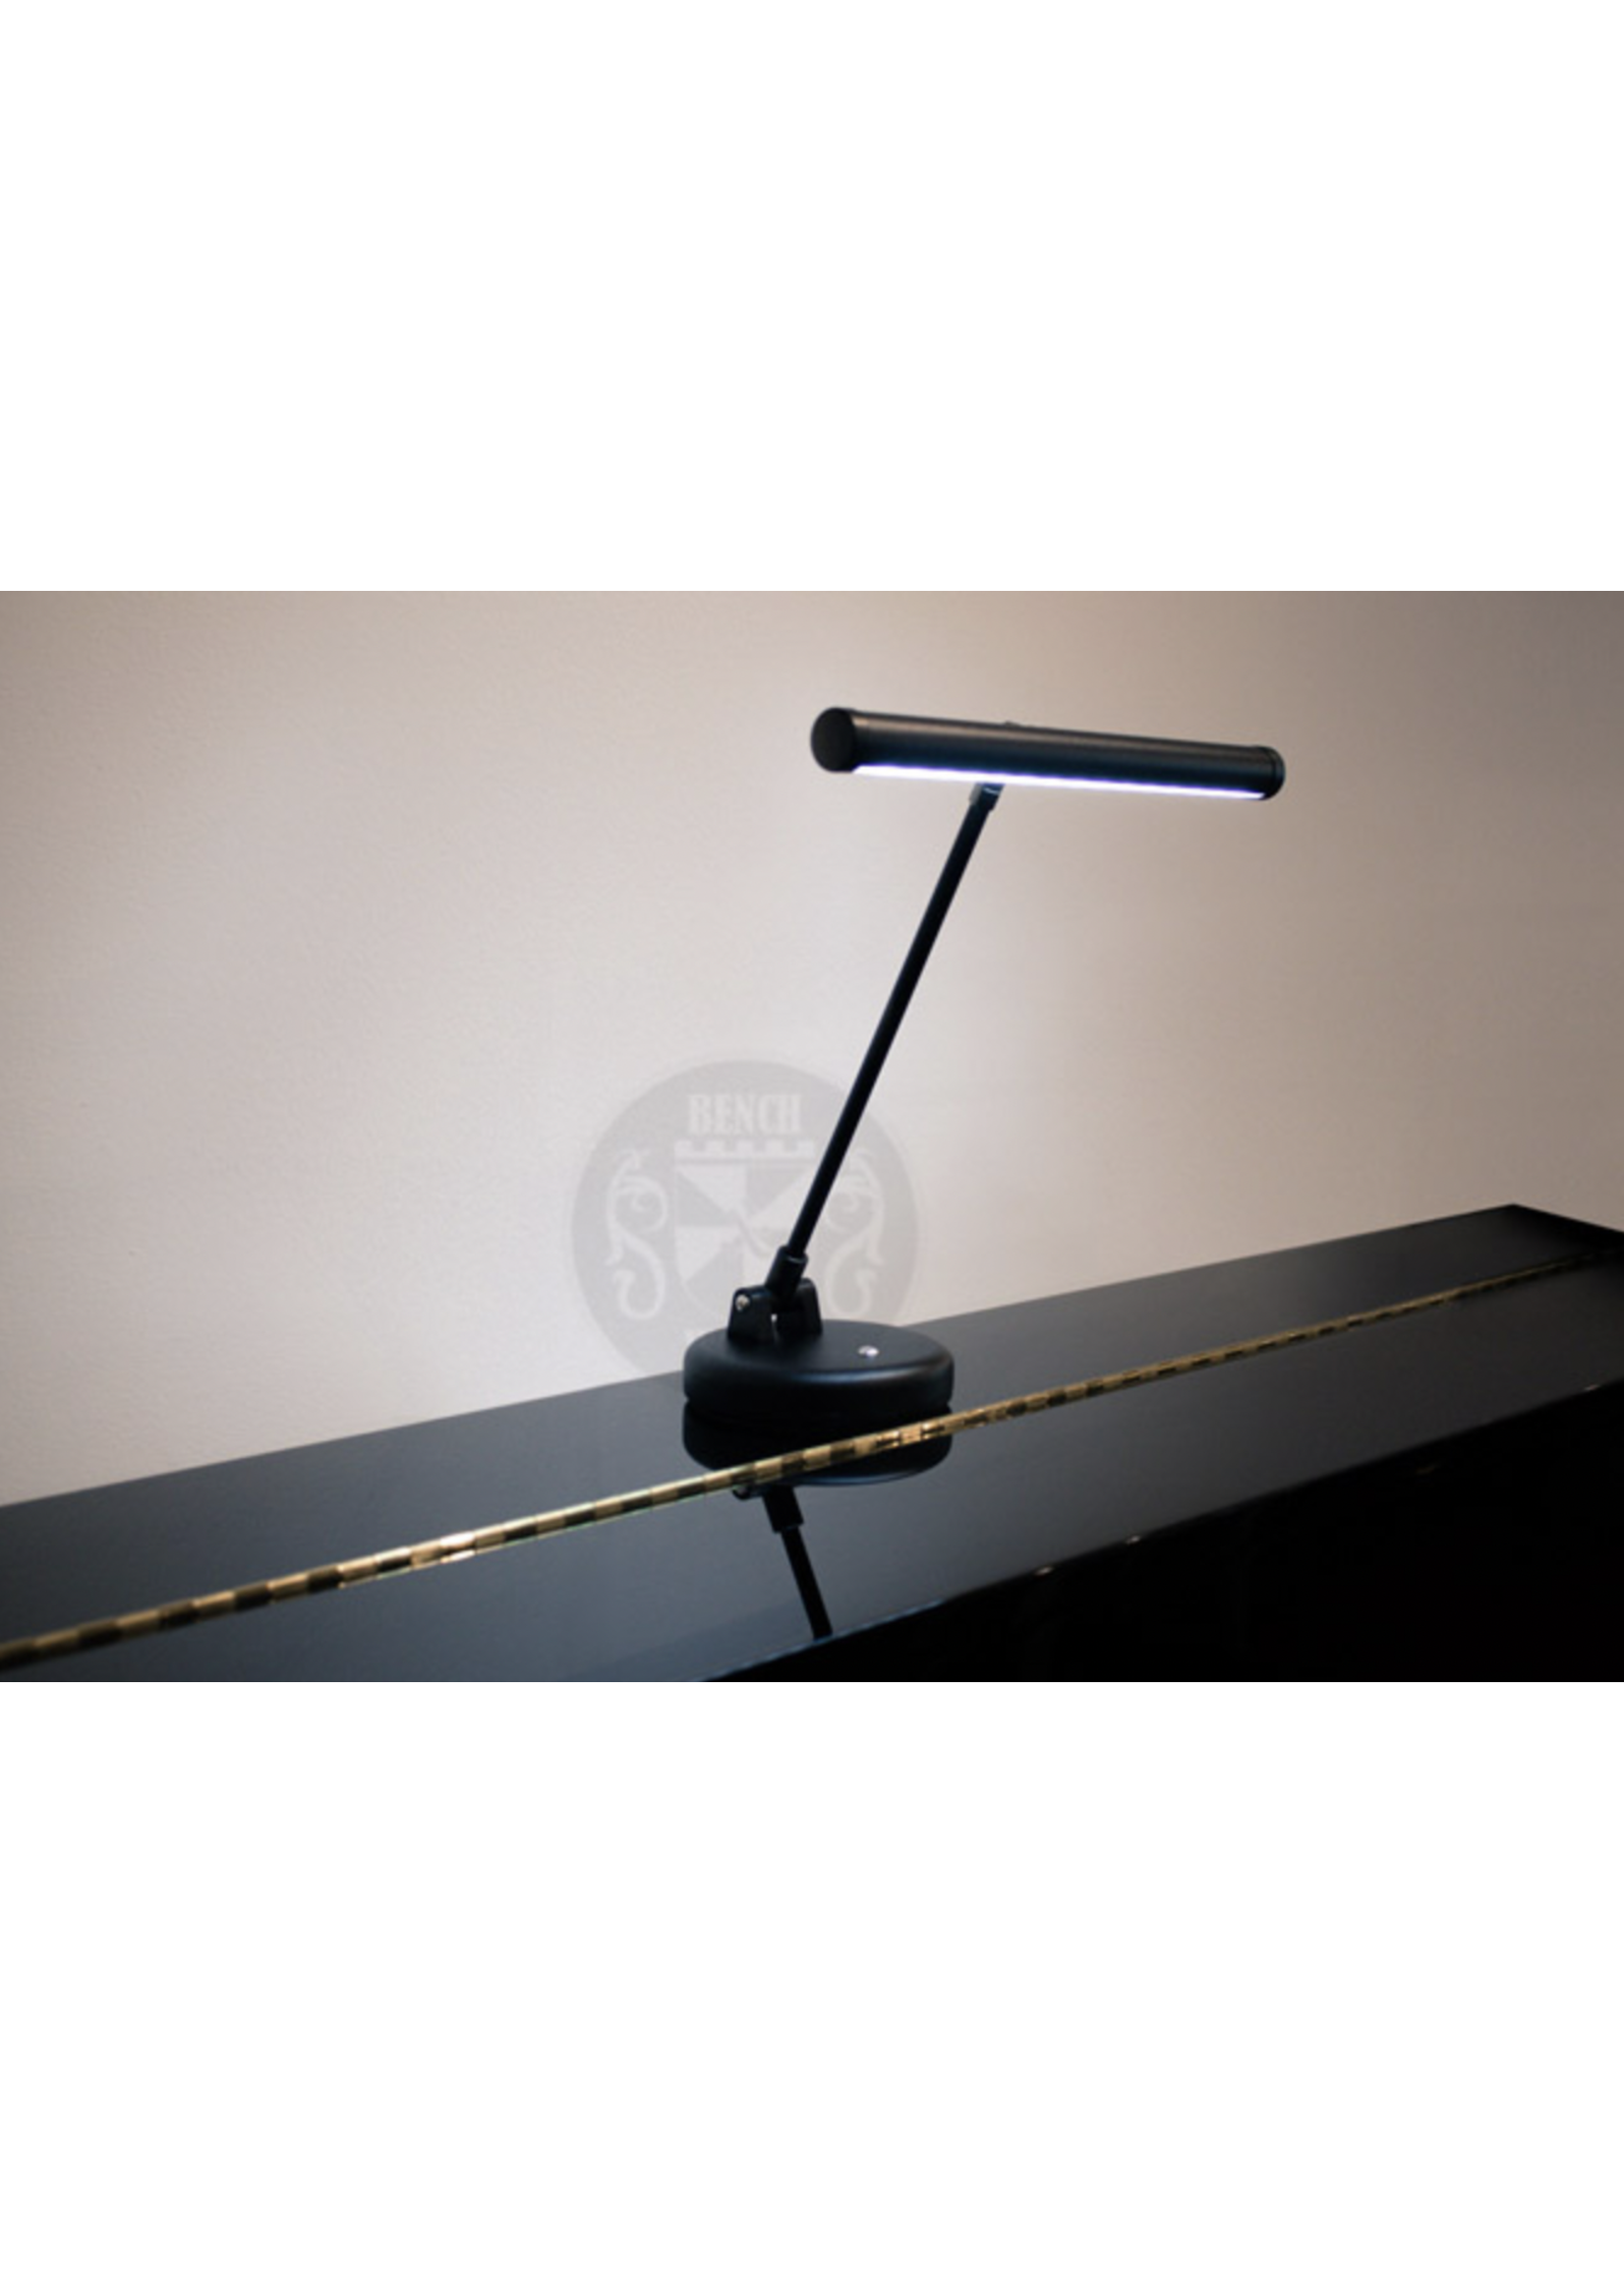 Benchworld Benchworld Piano Lamp Gemini LED Black